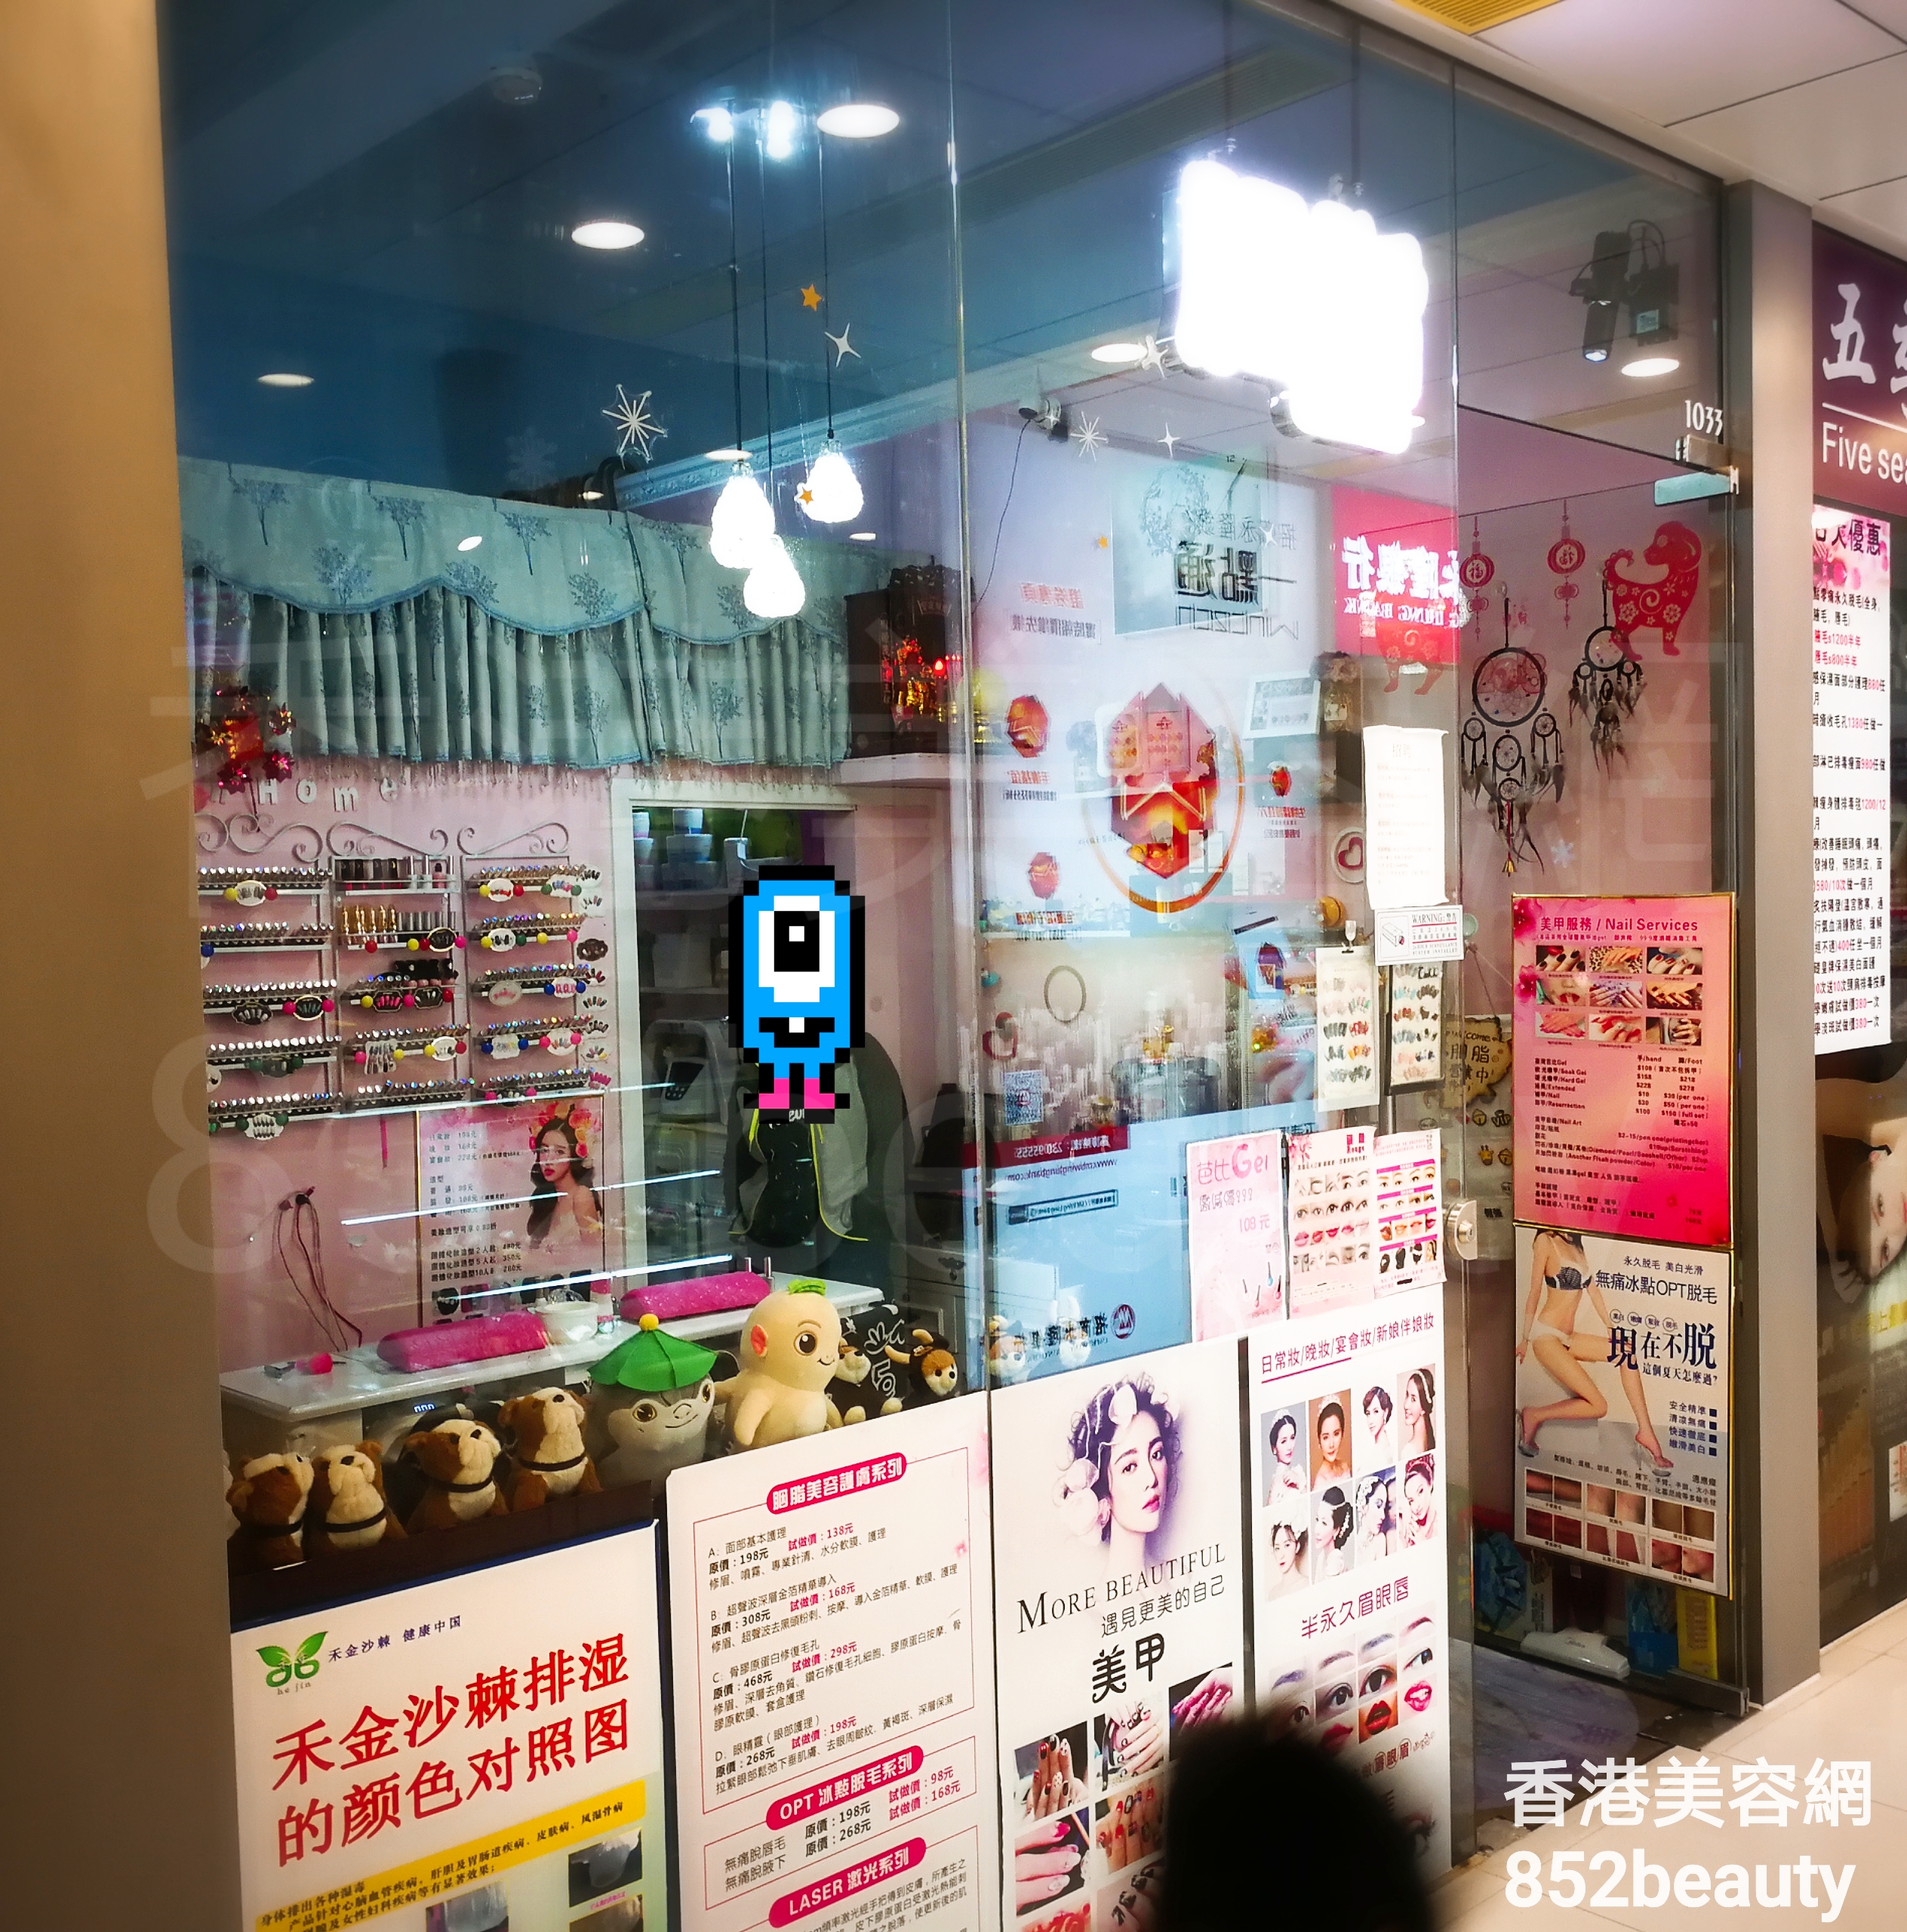 香港美容網 Hong Kong Beauty Salon 美容院 / 美容師: HEBEES 女神